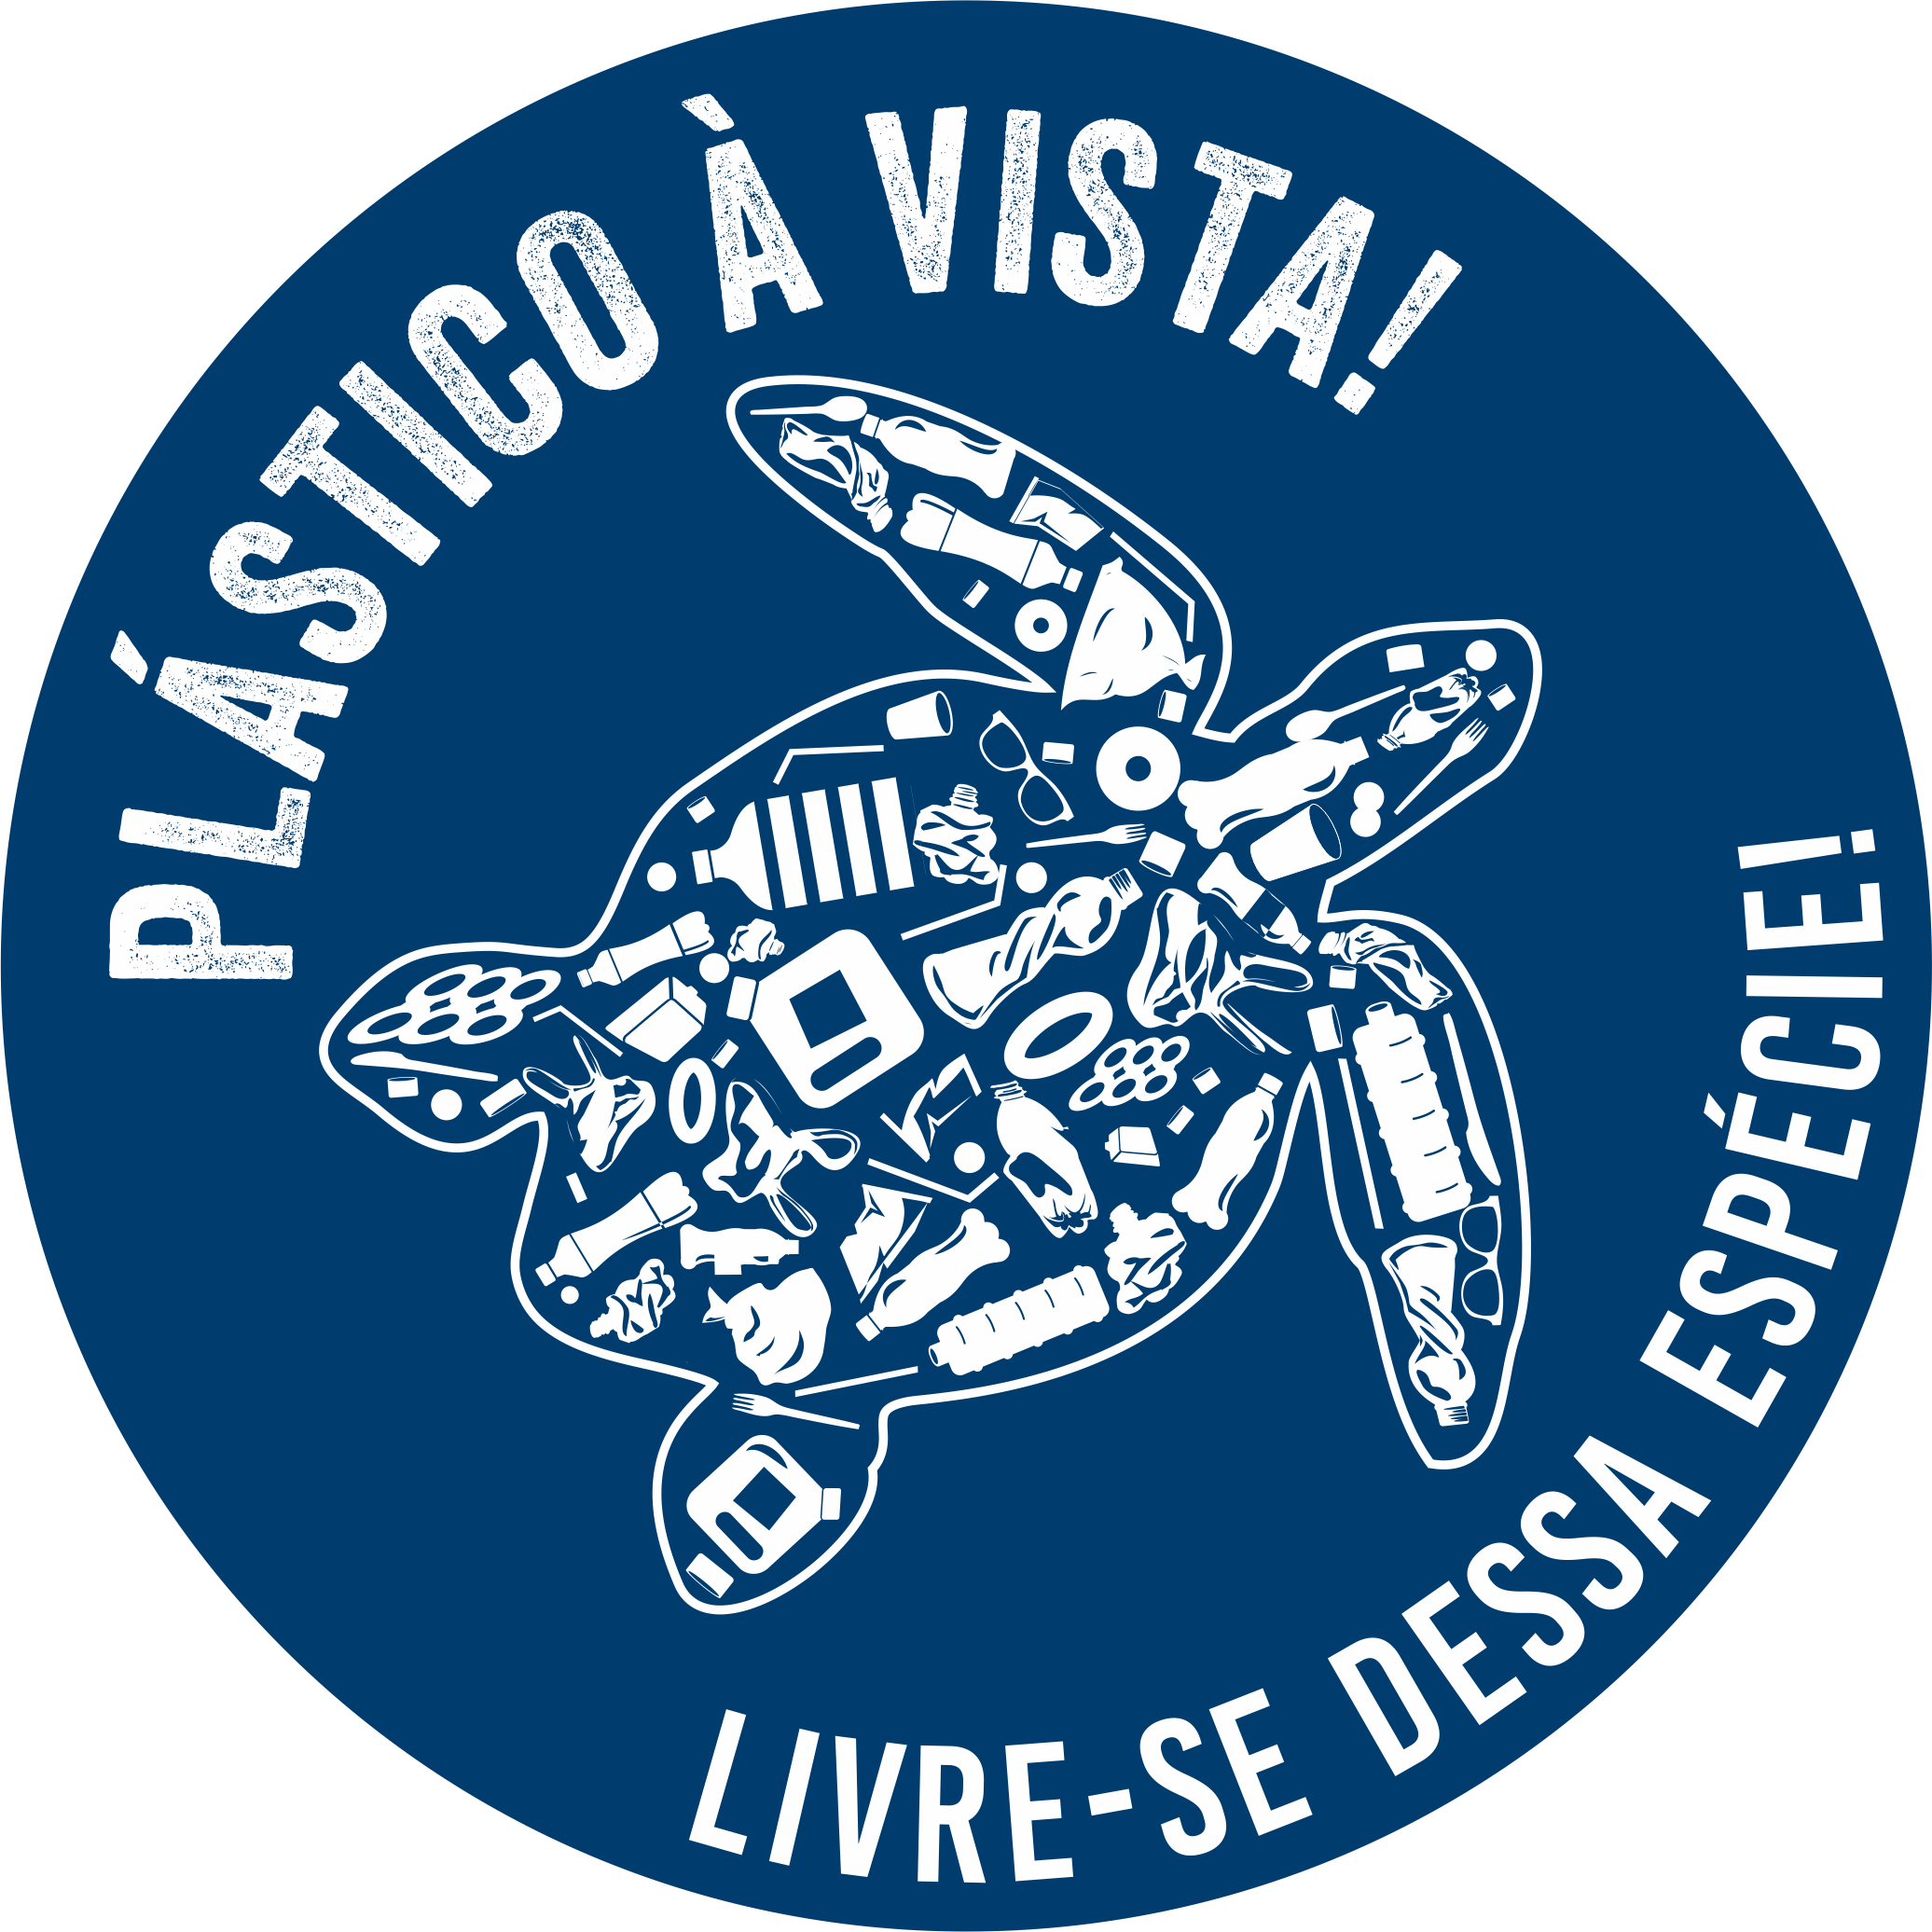 MAR Shopping Algarve sensibiliza para o ambiente com exposição sobre plásticos marinhos